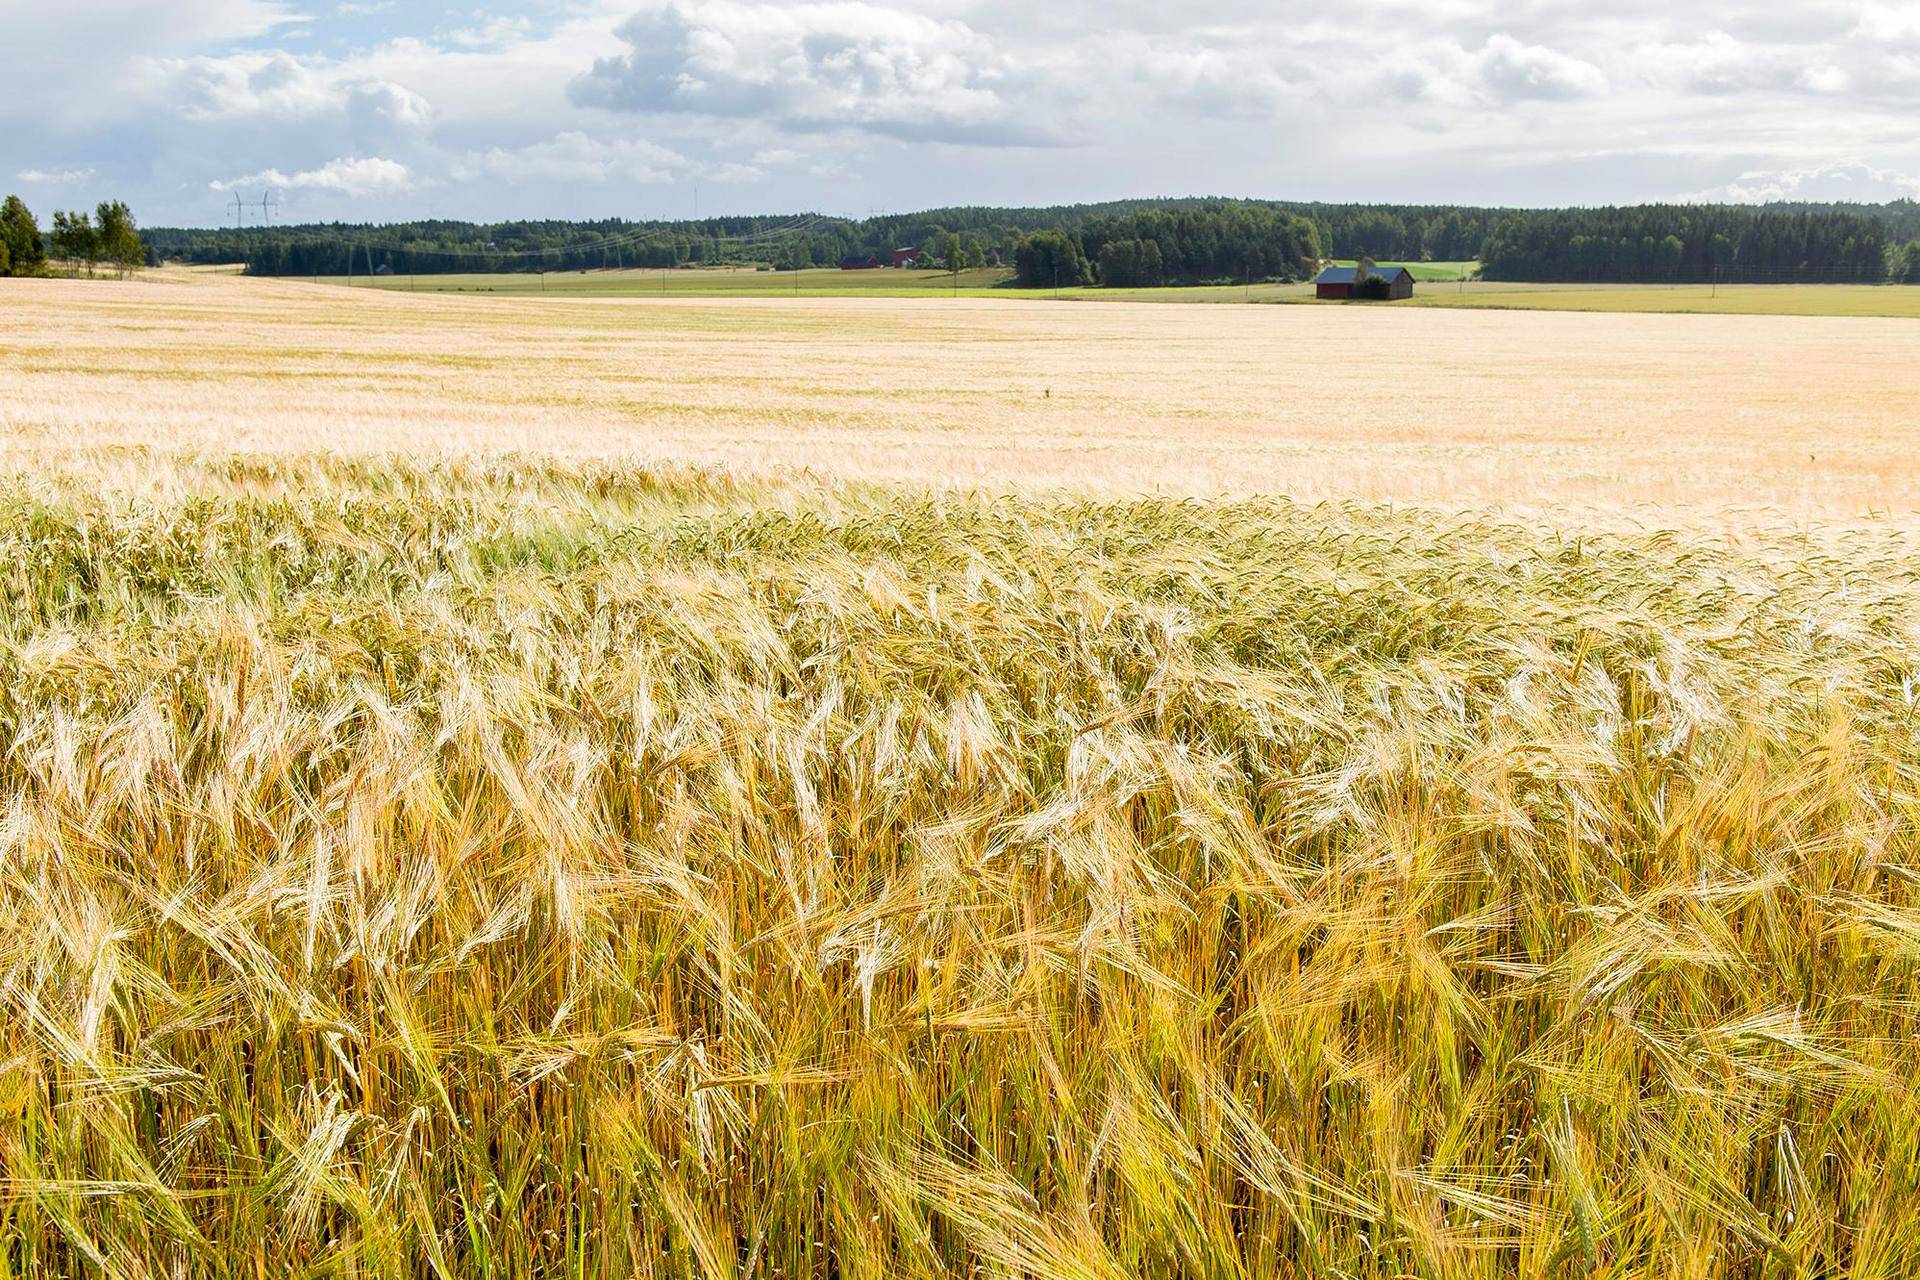 Varhaisimmat merkit maanviljelyksestä on löydetty Varsinais-Suomesta, jota on kutsuttu Suomen vilja-aitaksi. Sauvolaisella pellolla vehnä alkoi olla valmista puitavaksi elokuussa.